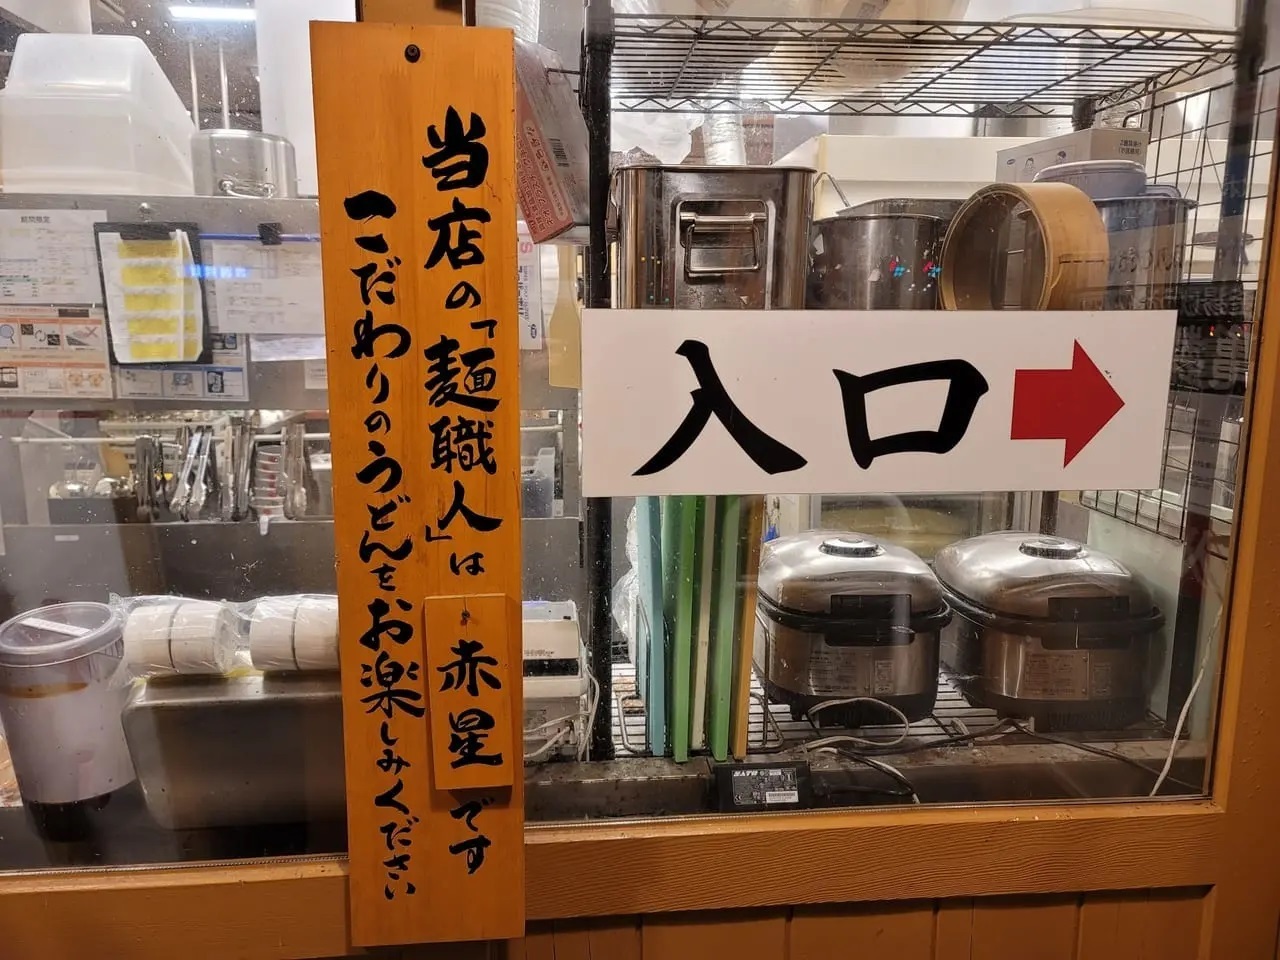 「丸亀製麺徳島」に掲げられている麺職人についての告知物。